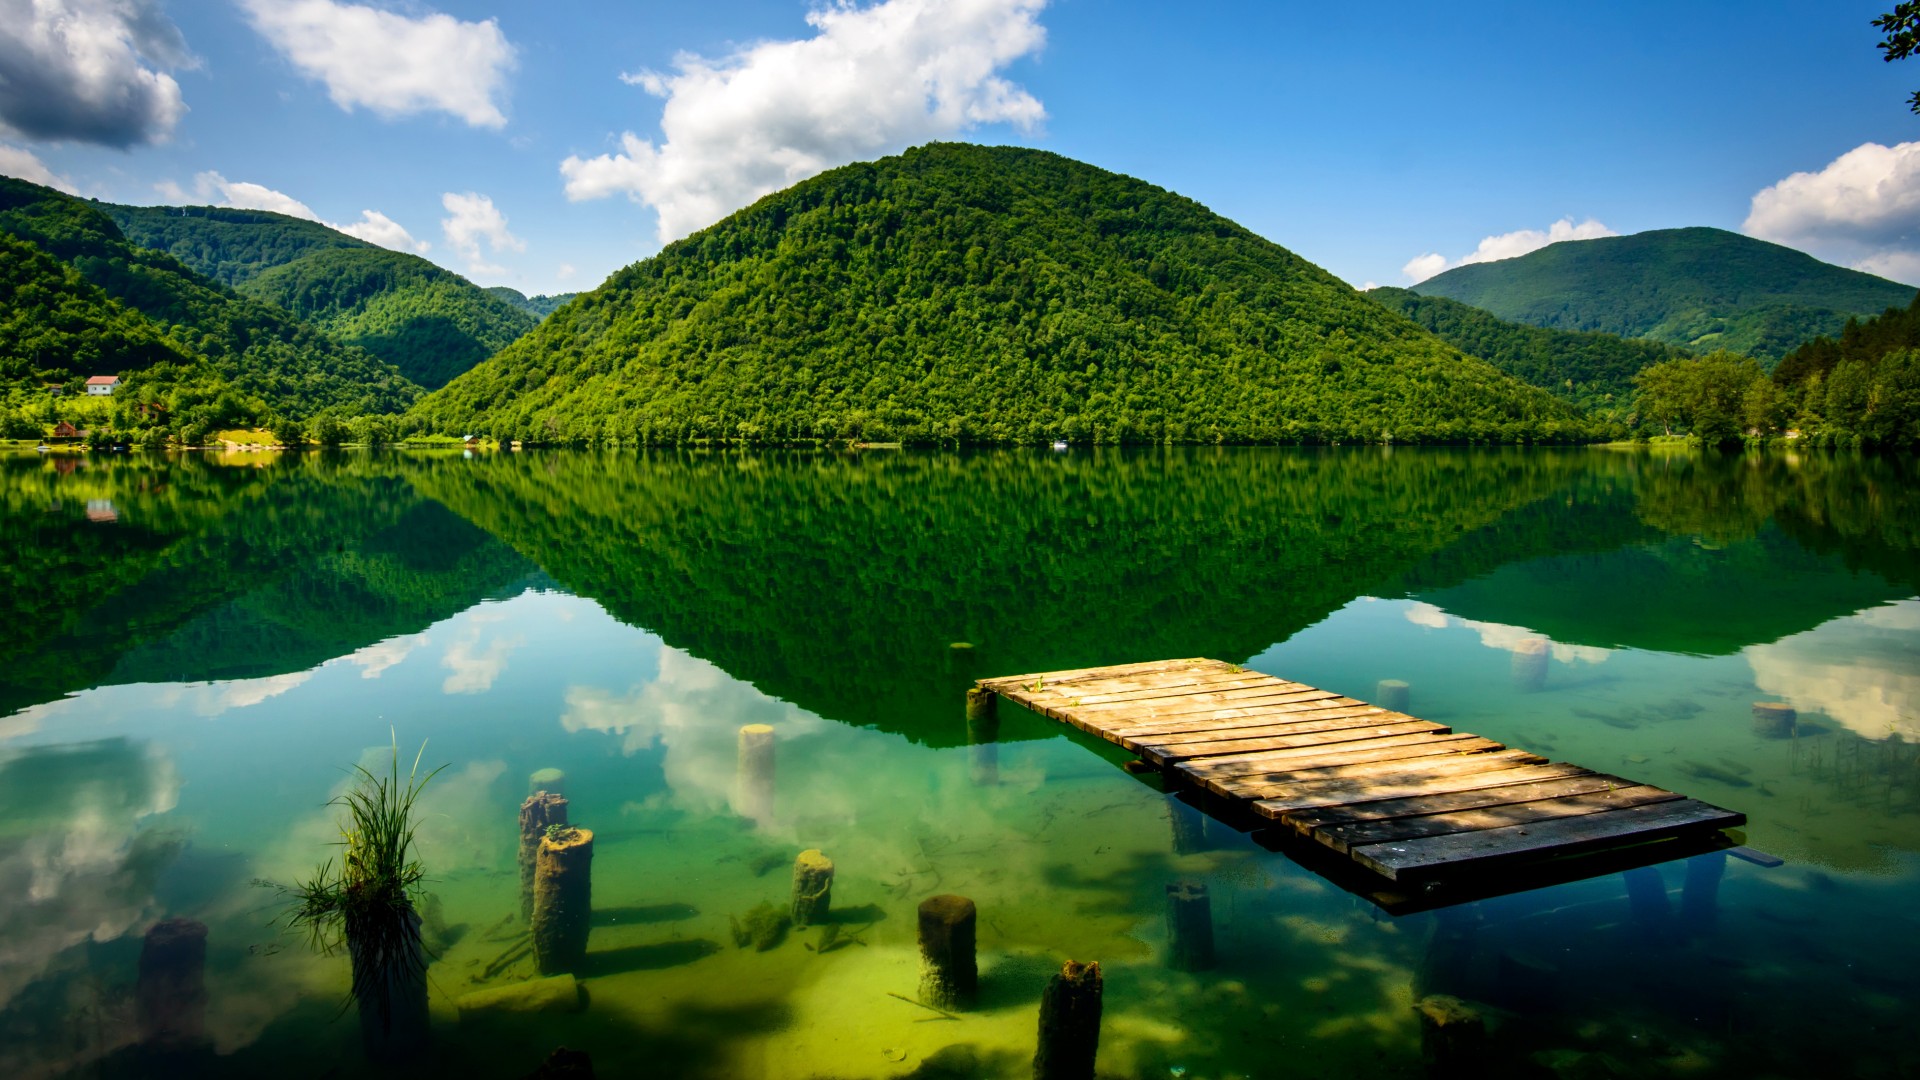 波斯尼亚和黑塞哥维那 山脉 绿色湖泊 河流 美丽的山水倒映 自然美景 风景桌面壁纸